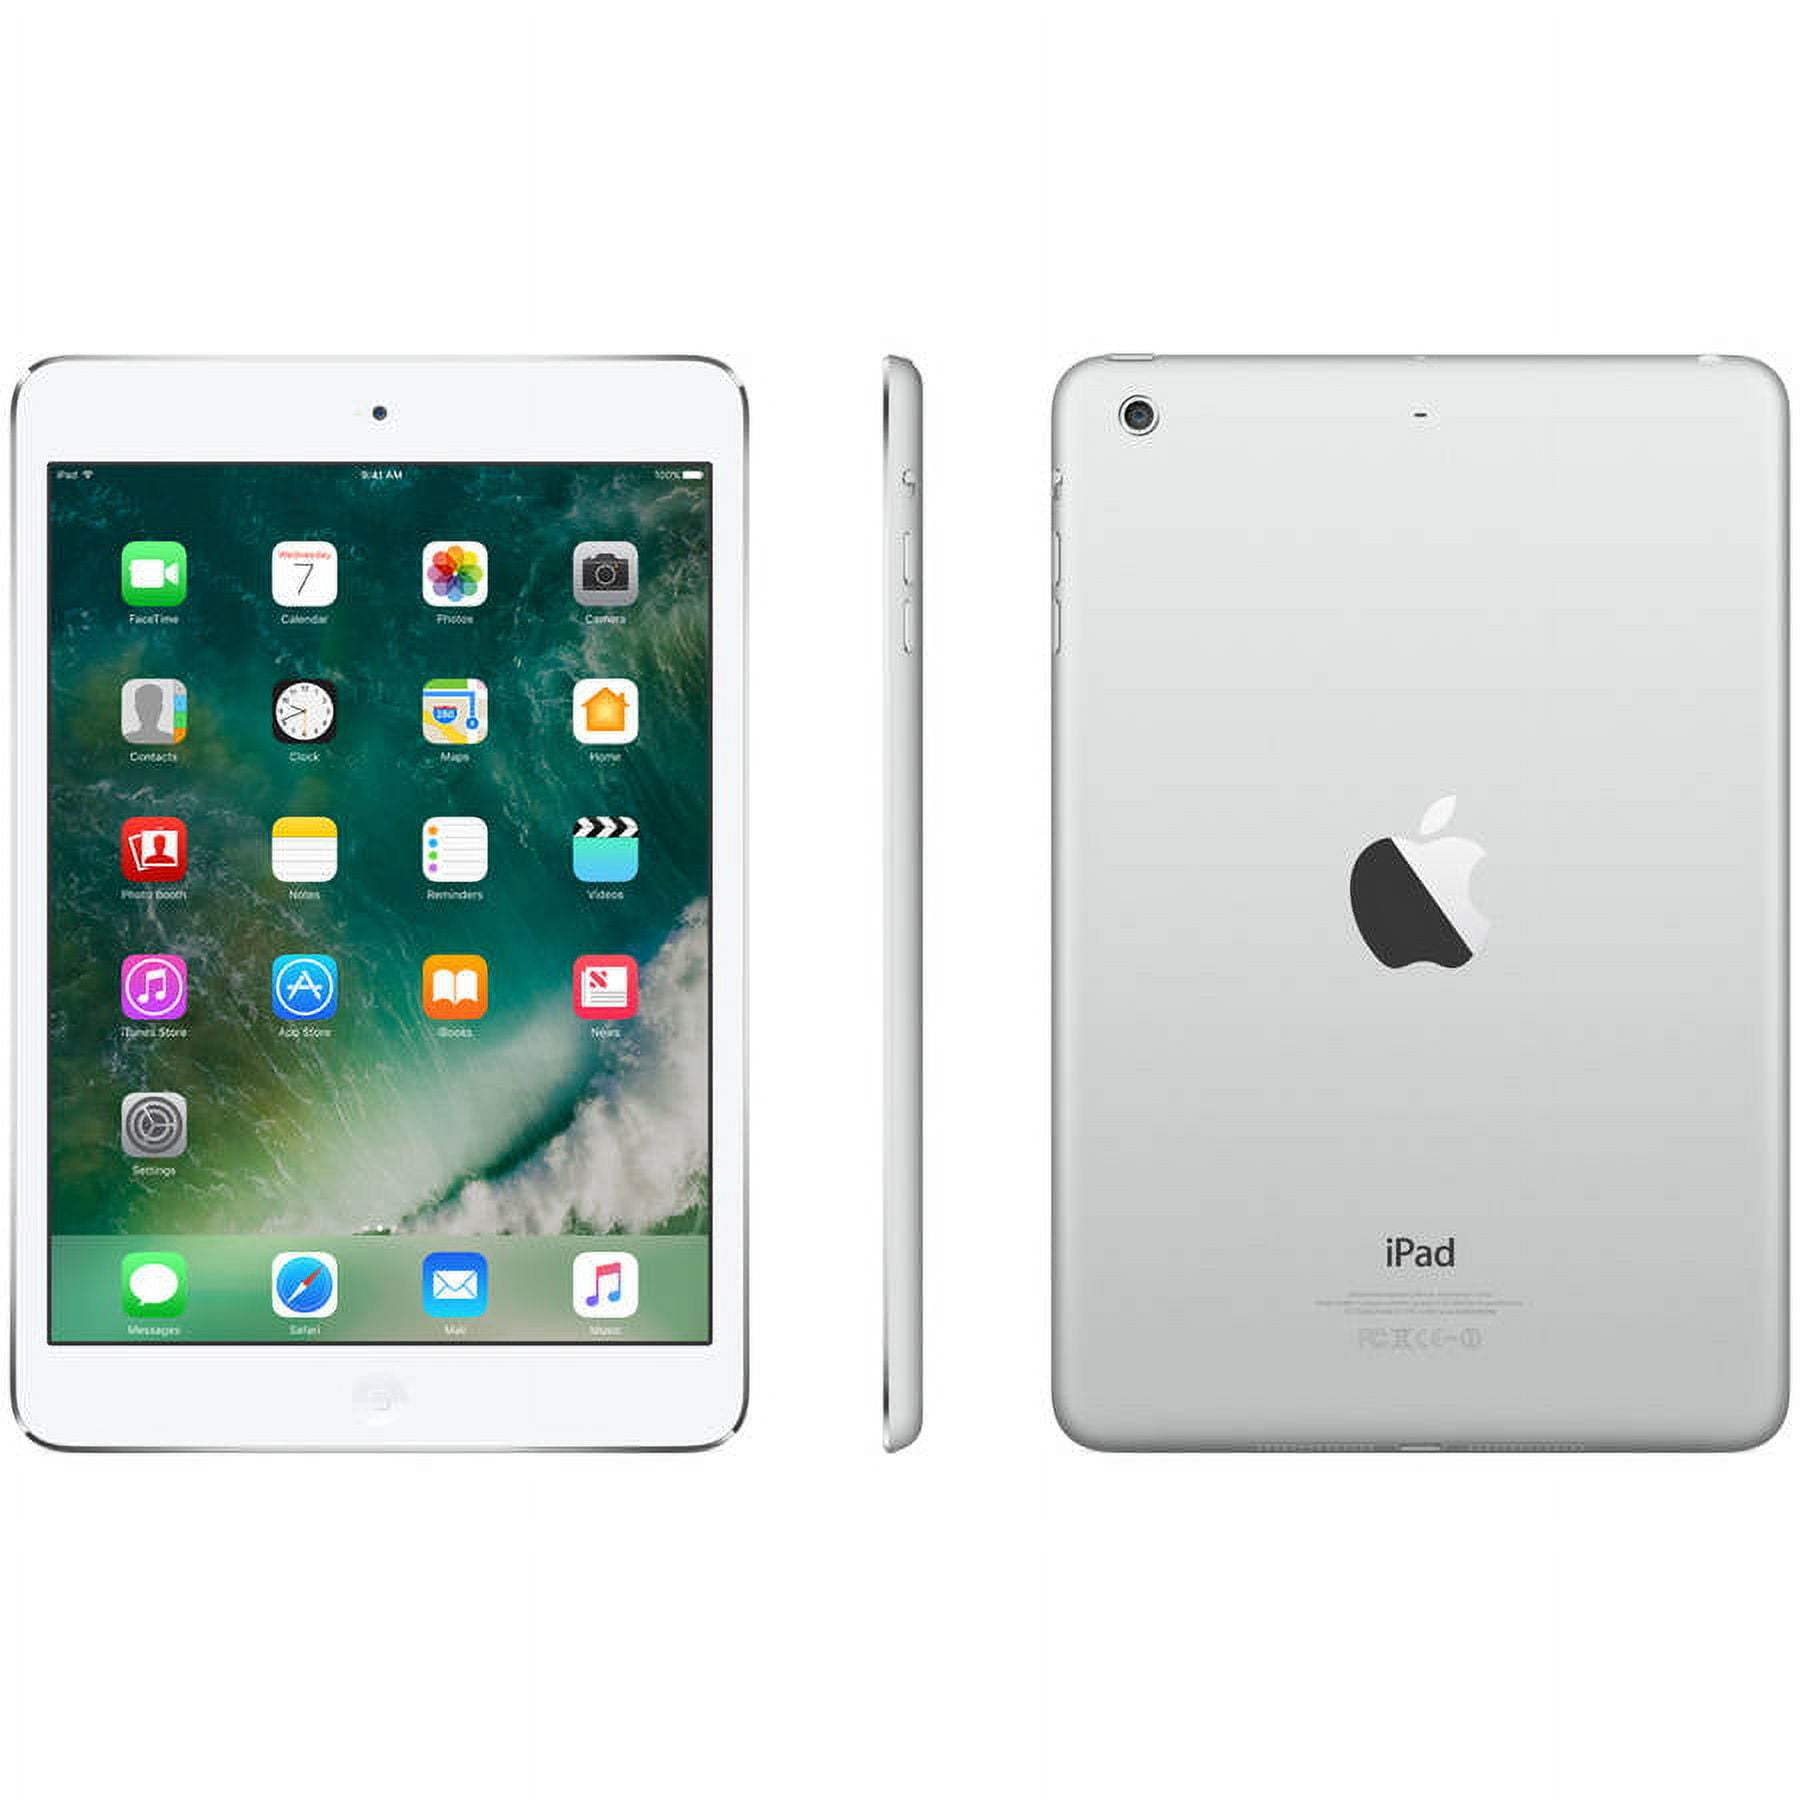 Apple iPad Mini 2 16GB + Wi-Fi - Walmart.com